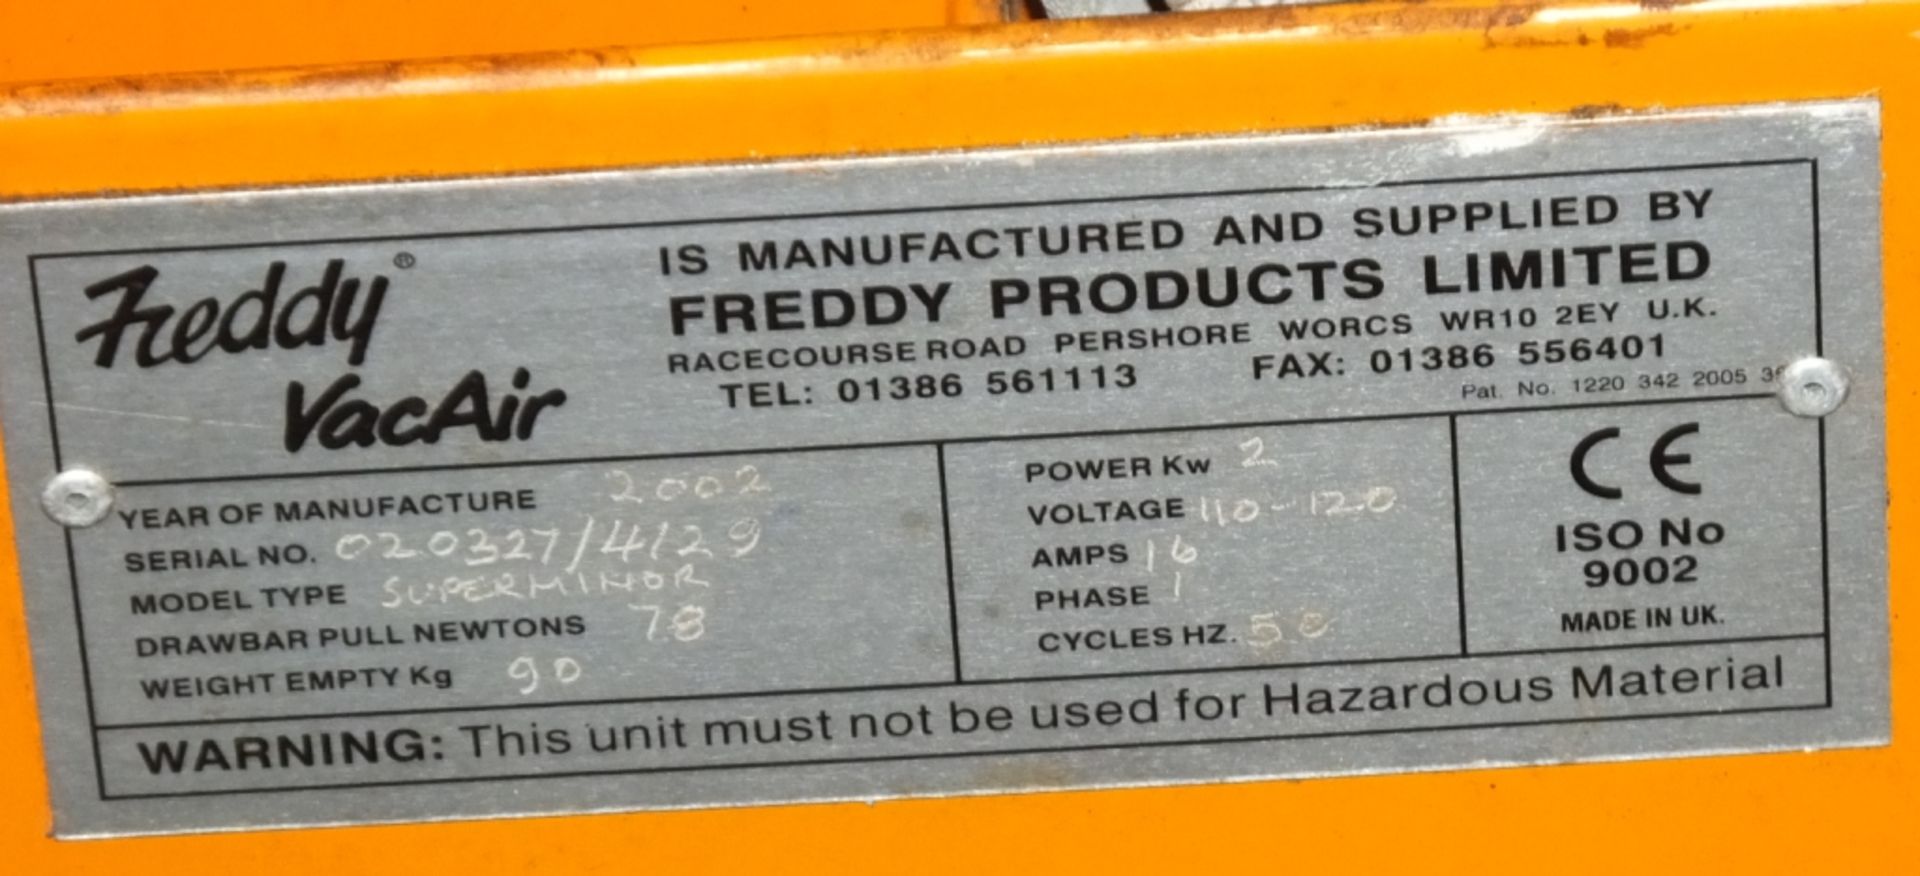 Freddy Vac Air hazardous material industrial vacuum cleaner - Image 3 of 5